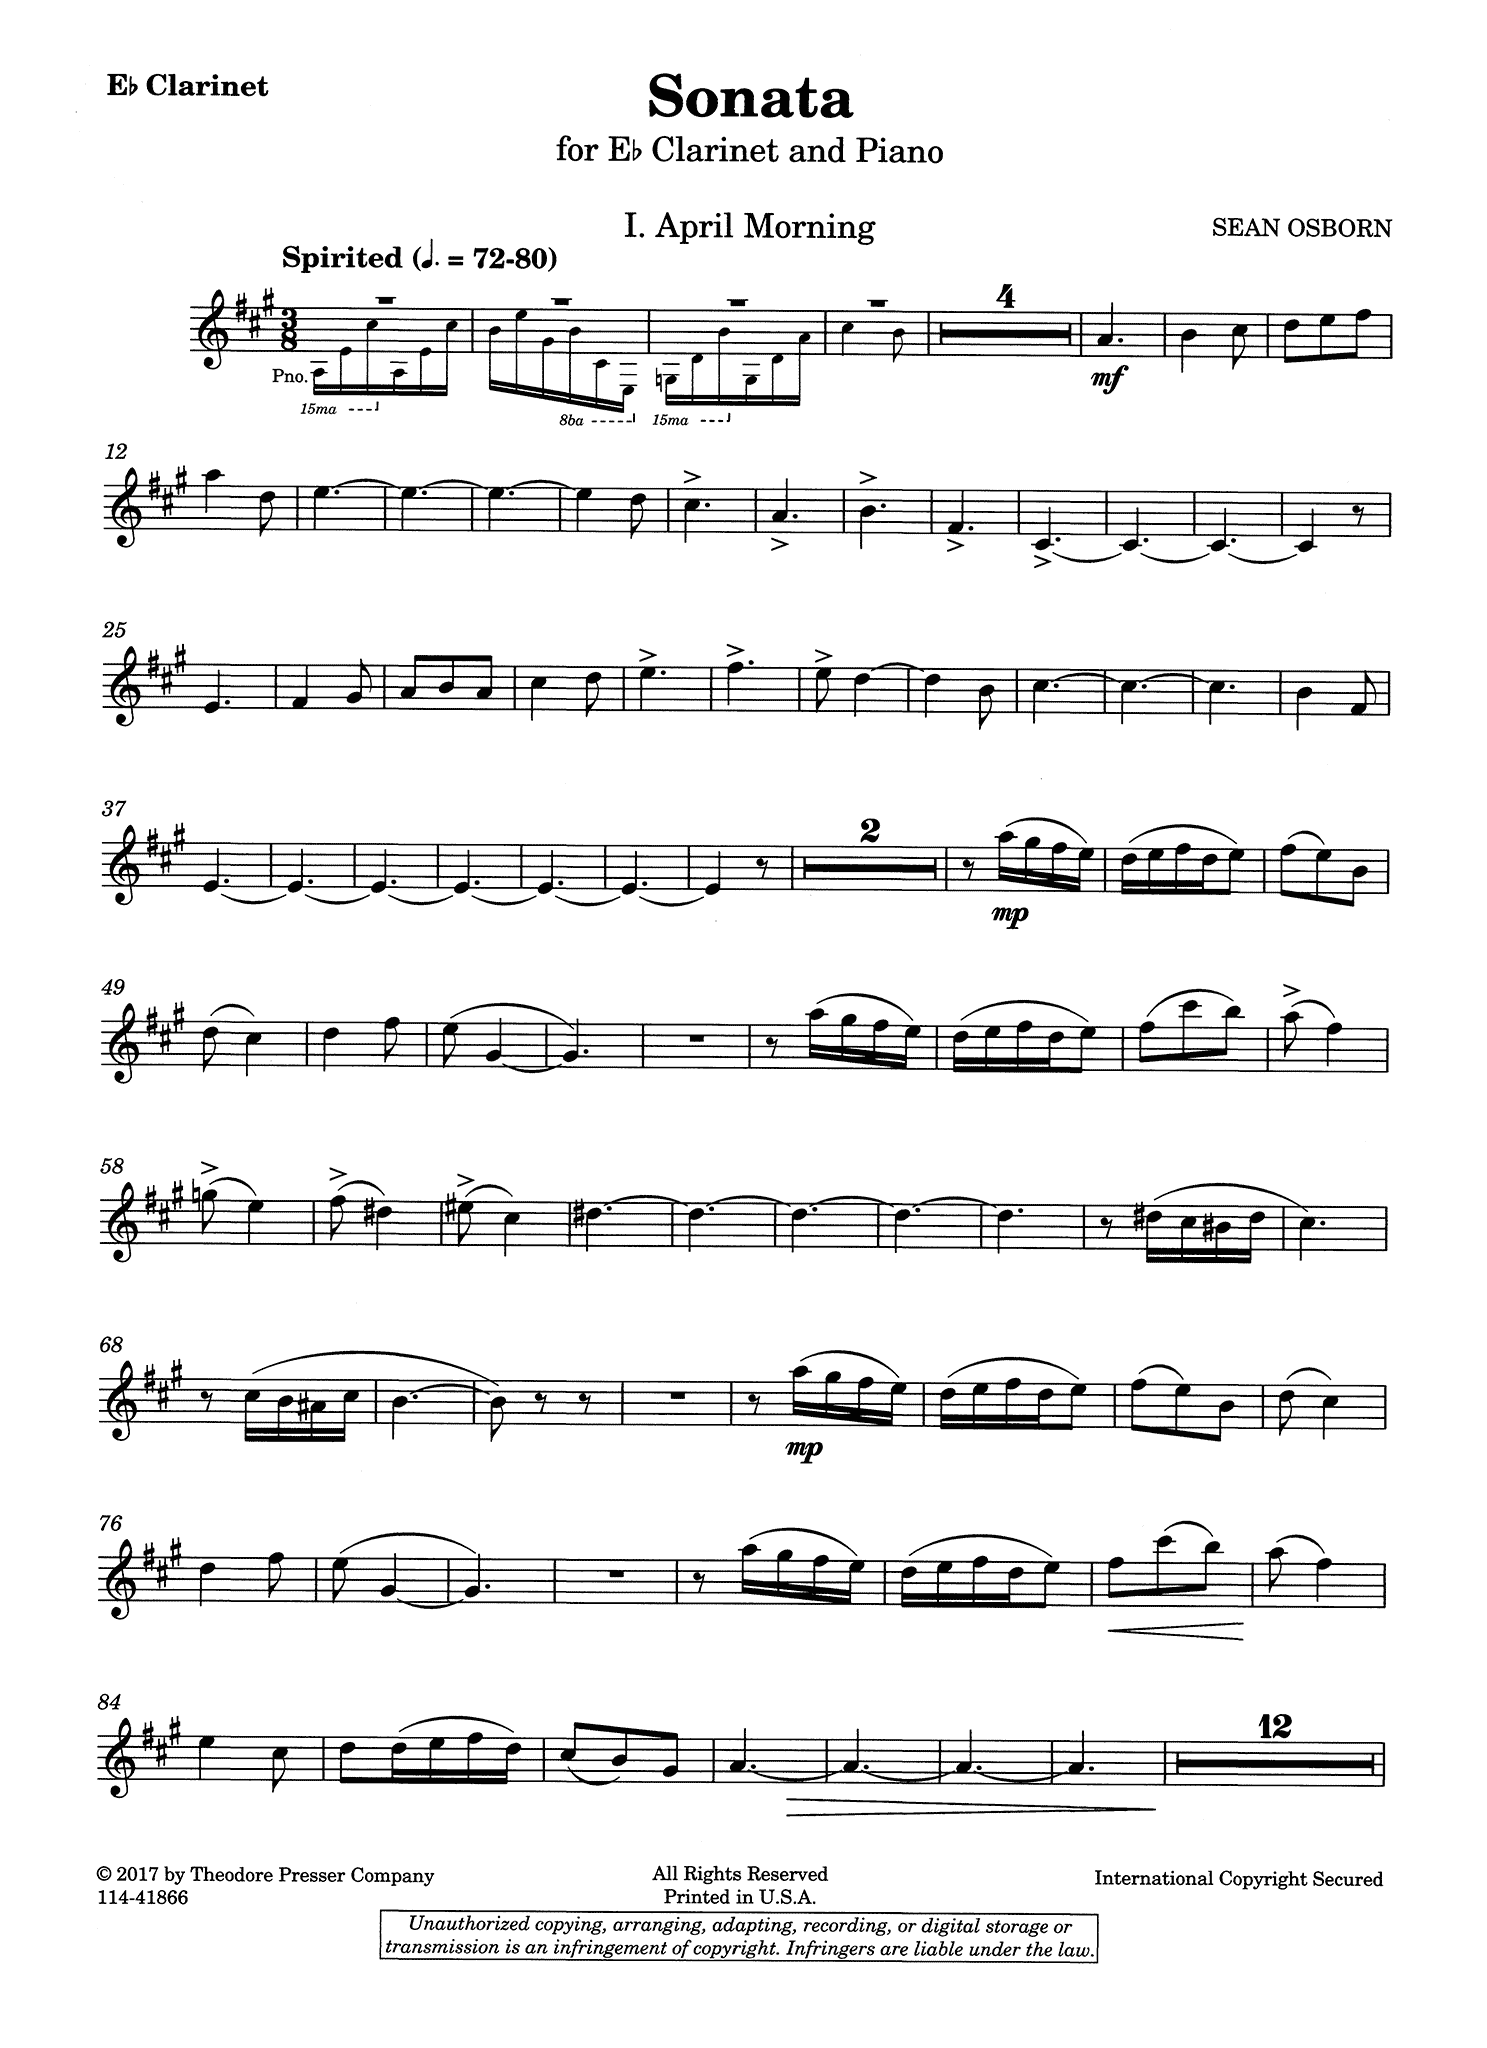 Sean Osborn Sonata for E-flat Clarinet & Piano solo part